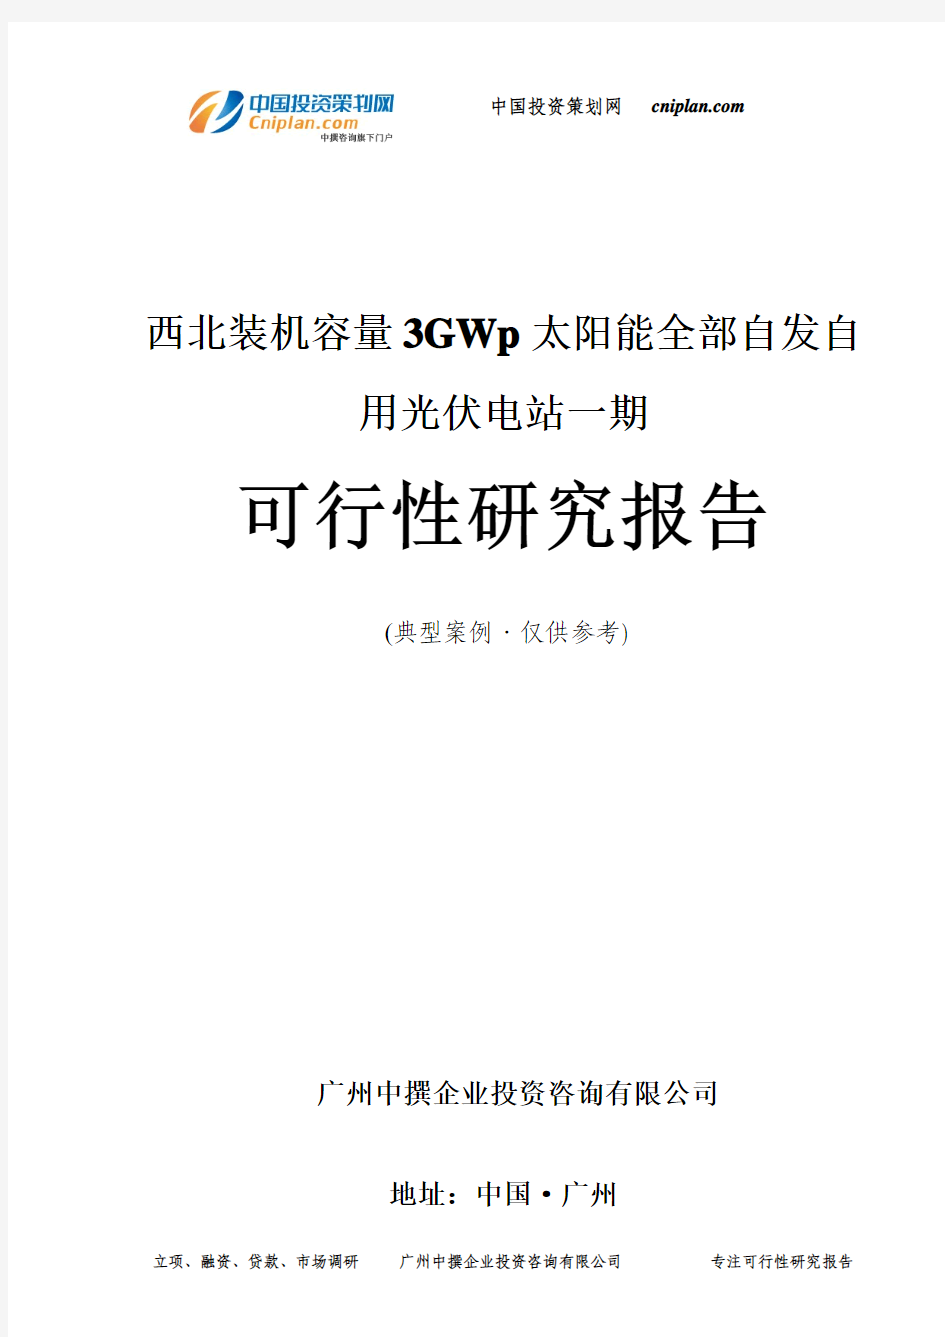 装机容量3GWp太阳能全部自发自用光伏电站一期可行性研究报告-广州中撰咨询